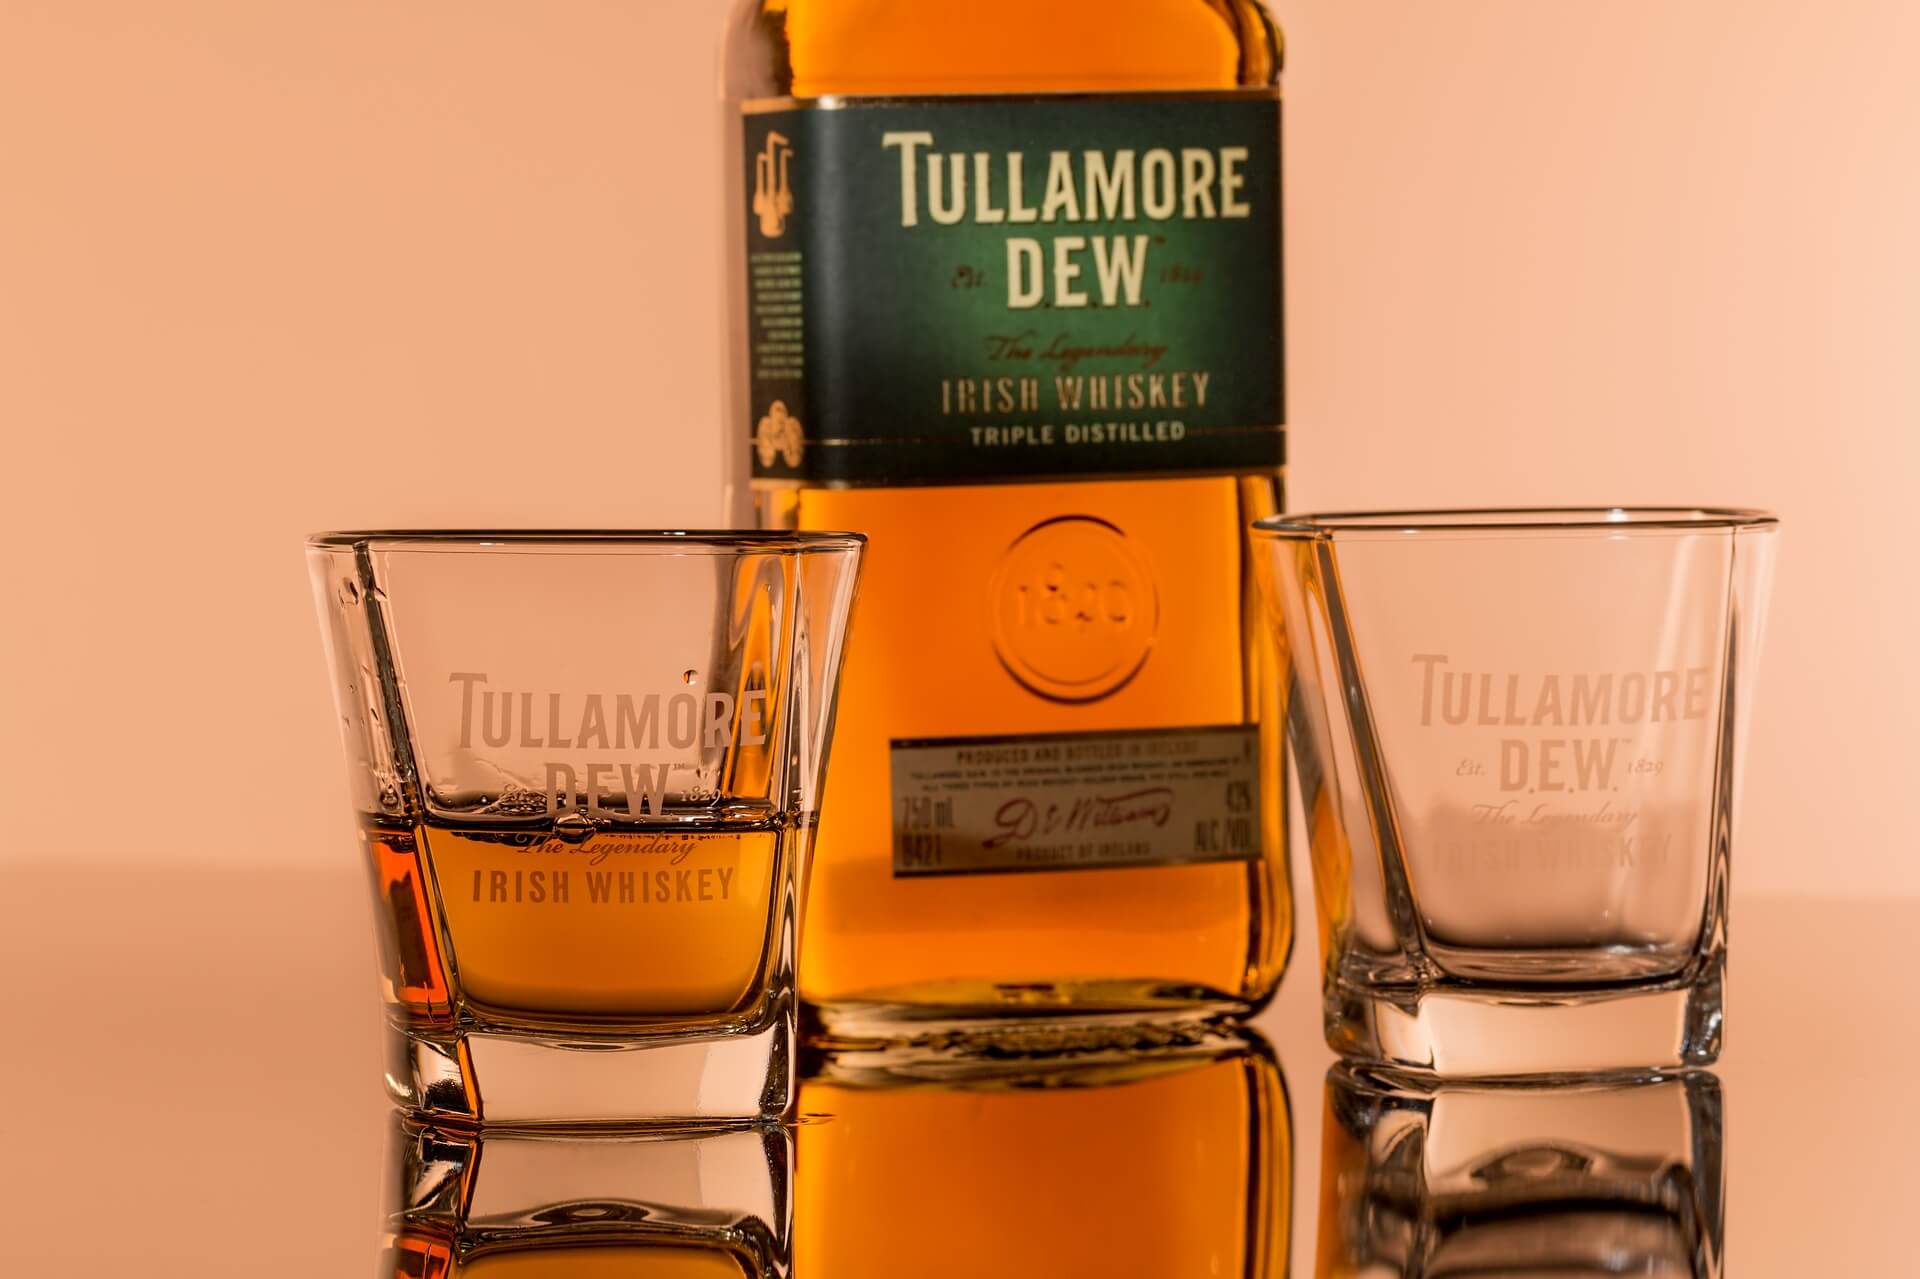 Whiskey Tullamore Dew XO Caribbean Rum Cask Finish Whiskey Irlandese Blended